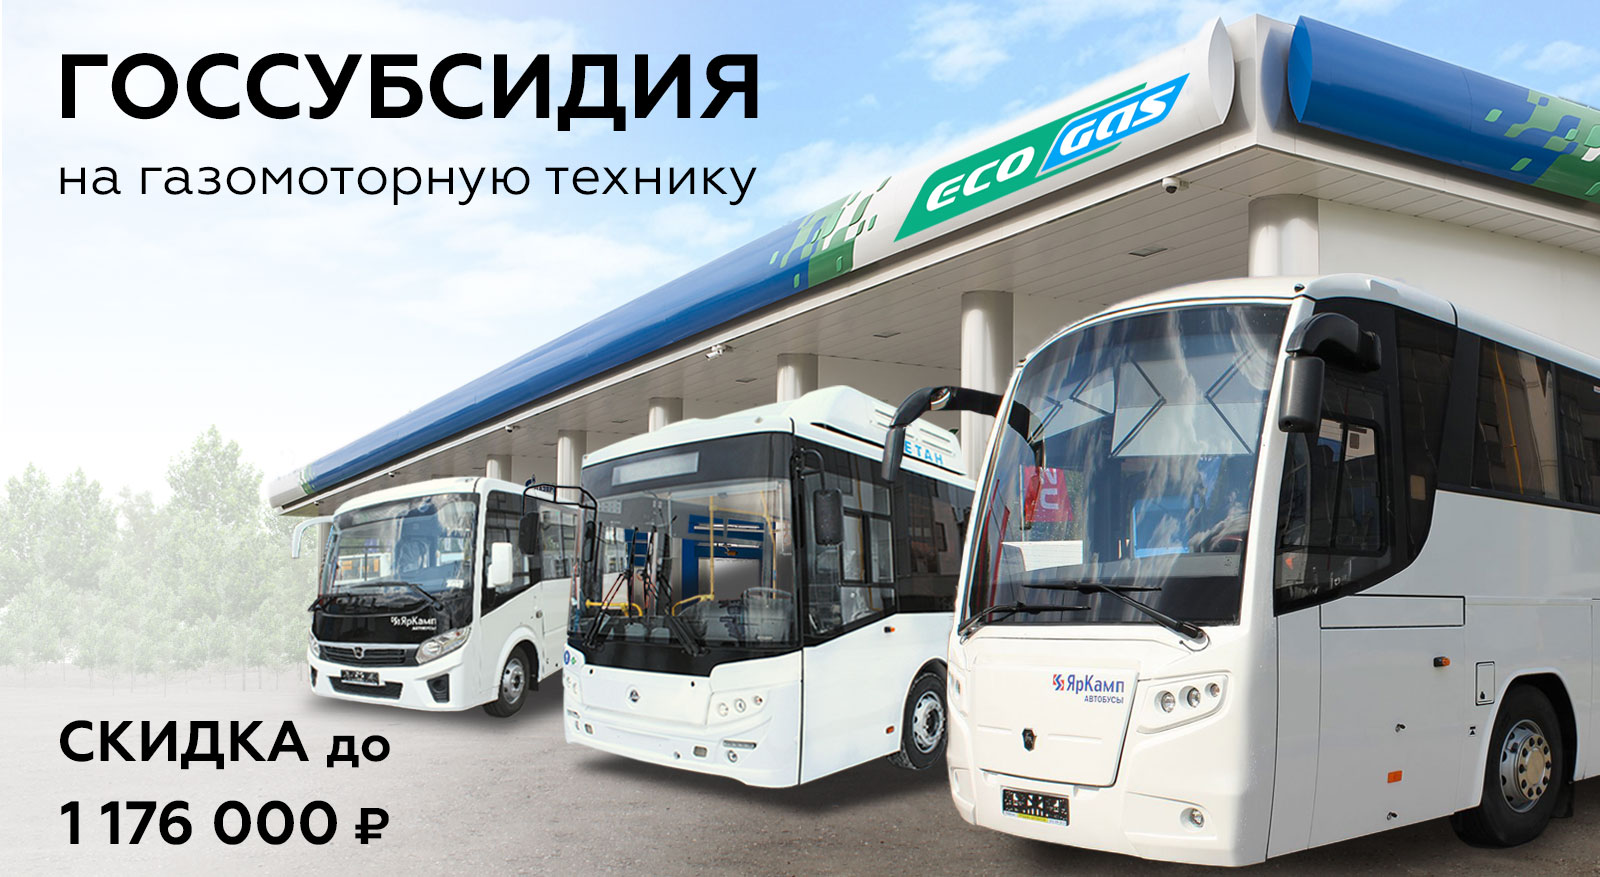 Госсубсидия на гавтобусы ПАЗ, КАВЗ и ЛиАЗ 2021 года. Официальный дилер - ЯрКамп.